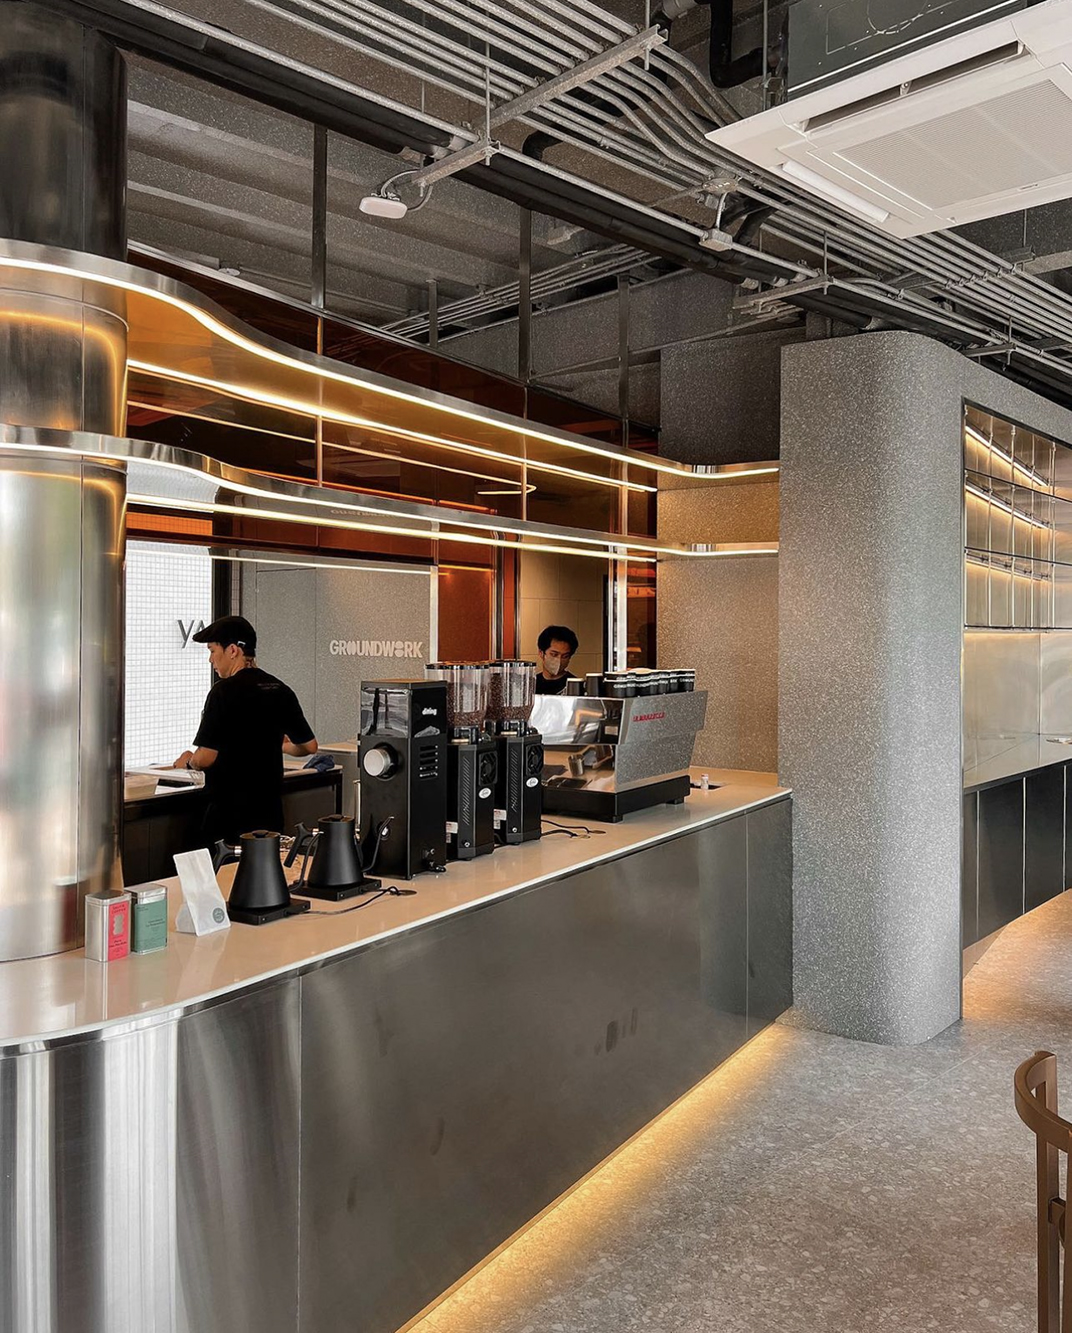 旧建筑翻新而成的咖啡馆Coffee 泰国 曼谷 北京 上海 珠海 广州 武汉 杭州 佛山 香港 澳门 logo设计 vi设计 空间设计